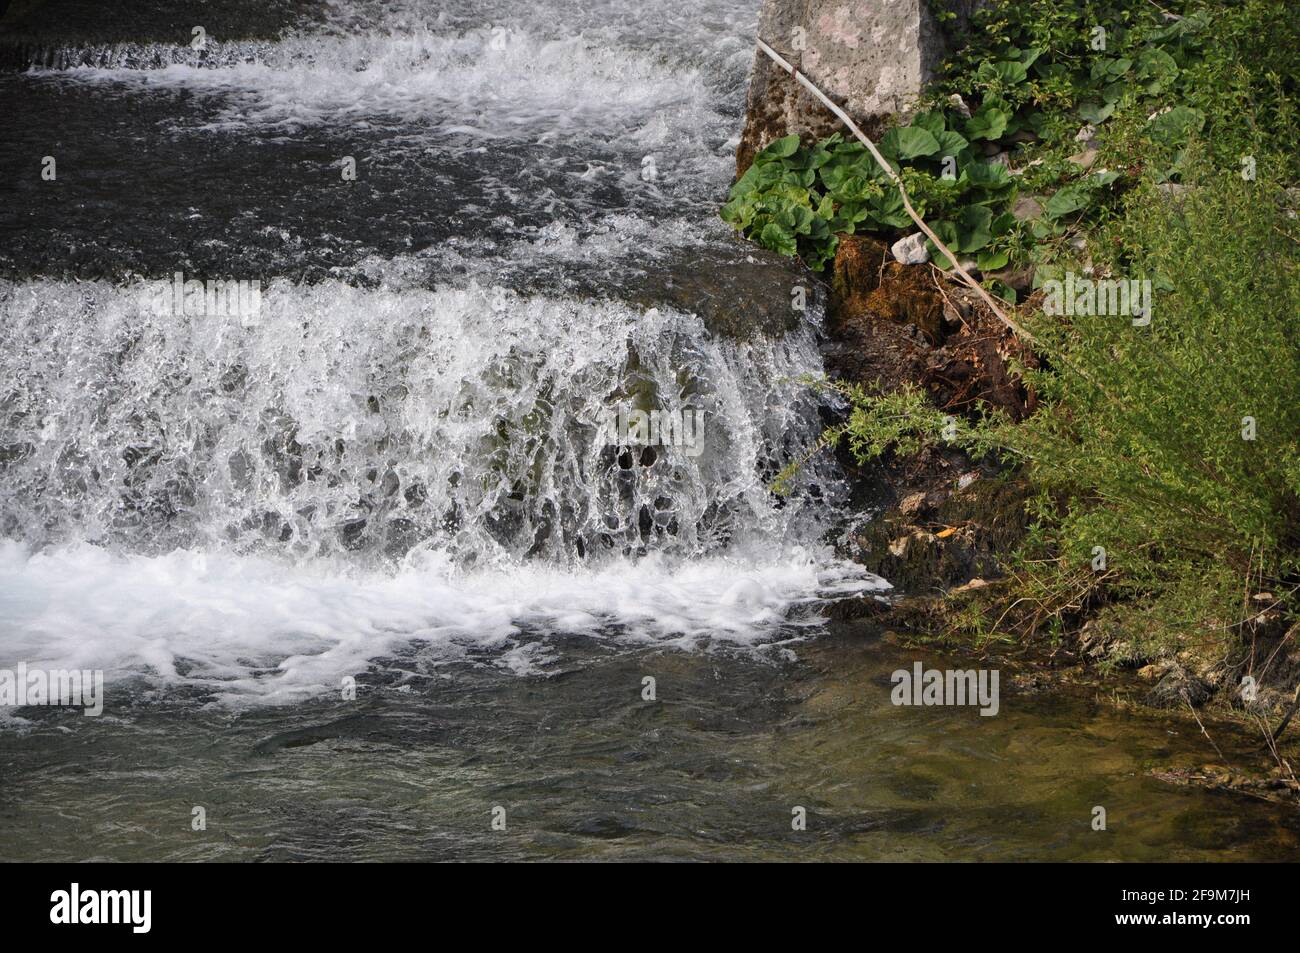 Fluss und Flussbett von Rječina, in der Nähe der Stadt Rijeka, in Kroatien. Wasserfall, kaltes klares Wasser in der Nähe der Quelle. Wird Aktualisiert Stockfoto